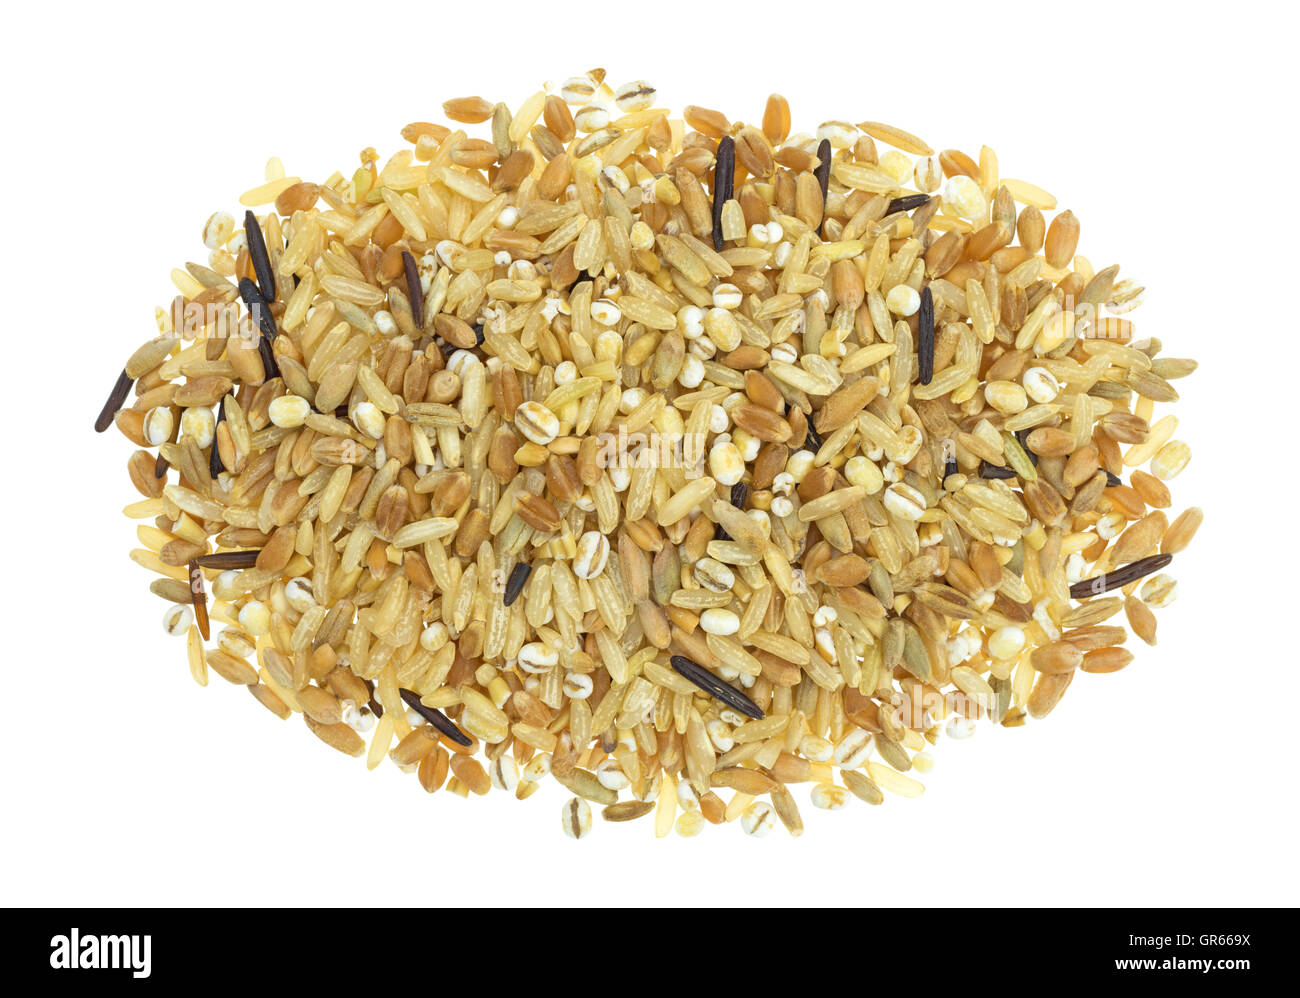 Draufsicht auf einen Teil von mehreren Sorten von Reis und Getreide auf einem weißen Hintergrund. Stockfoto